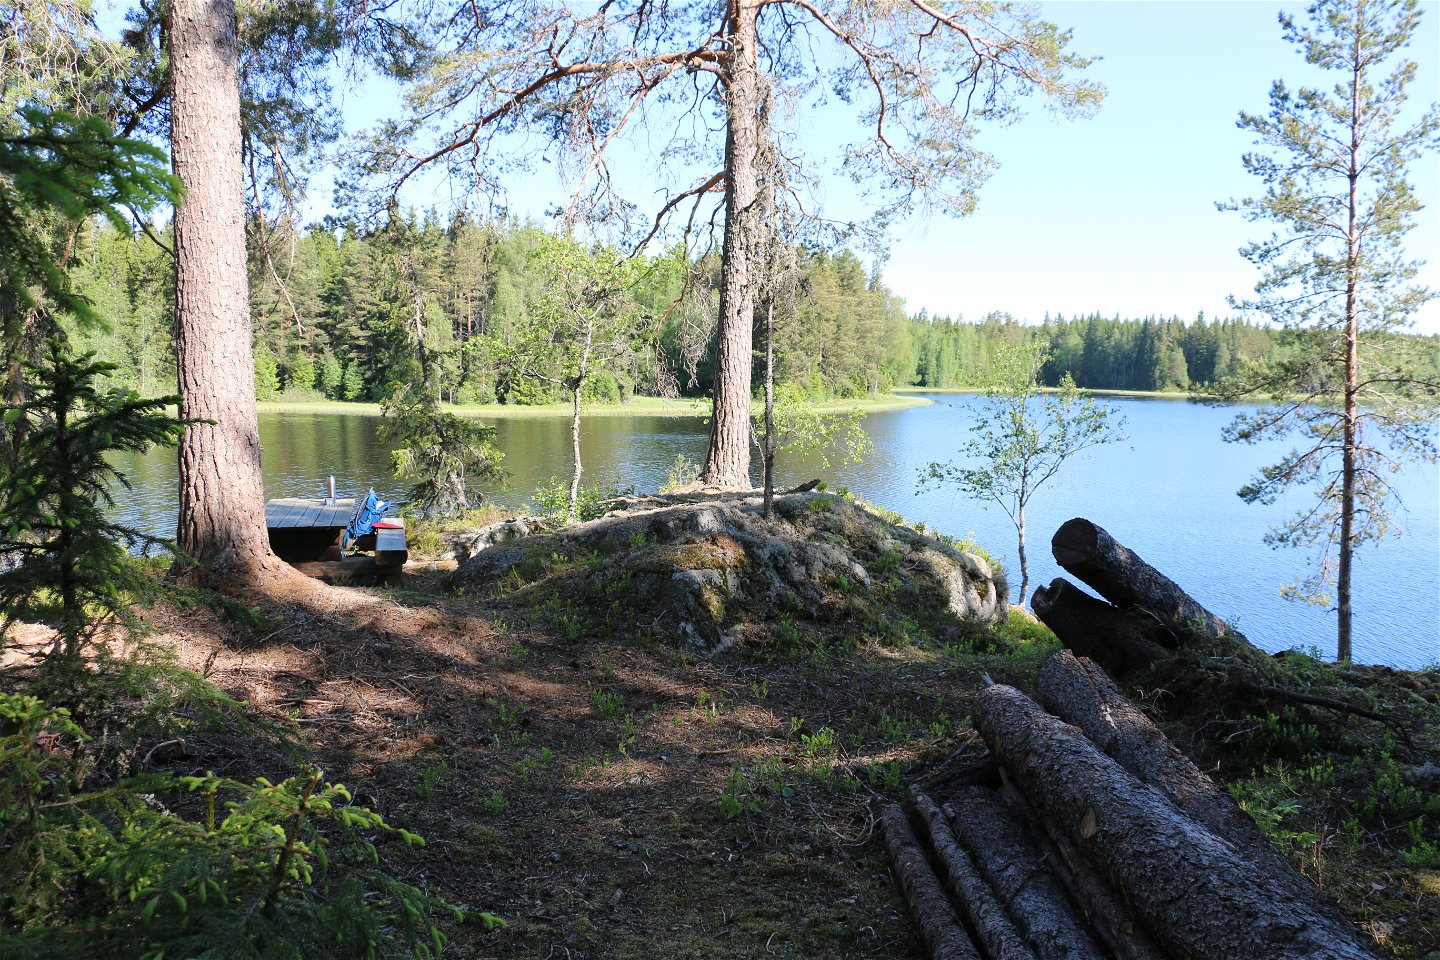 Skog med sjö i bakgrunden, ett picknickbord skymtar till vänster i bild.